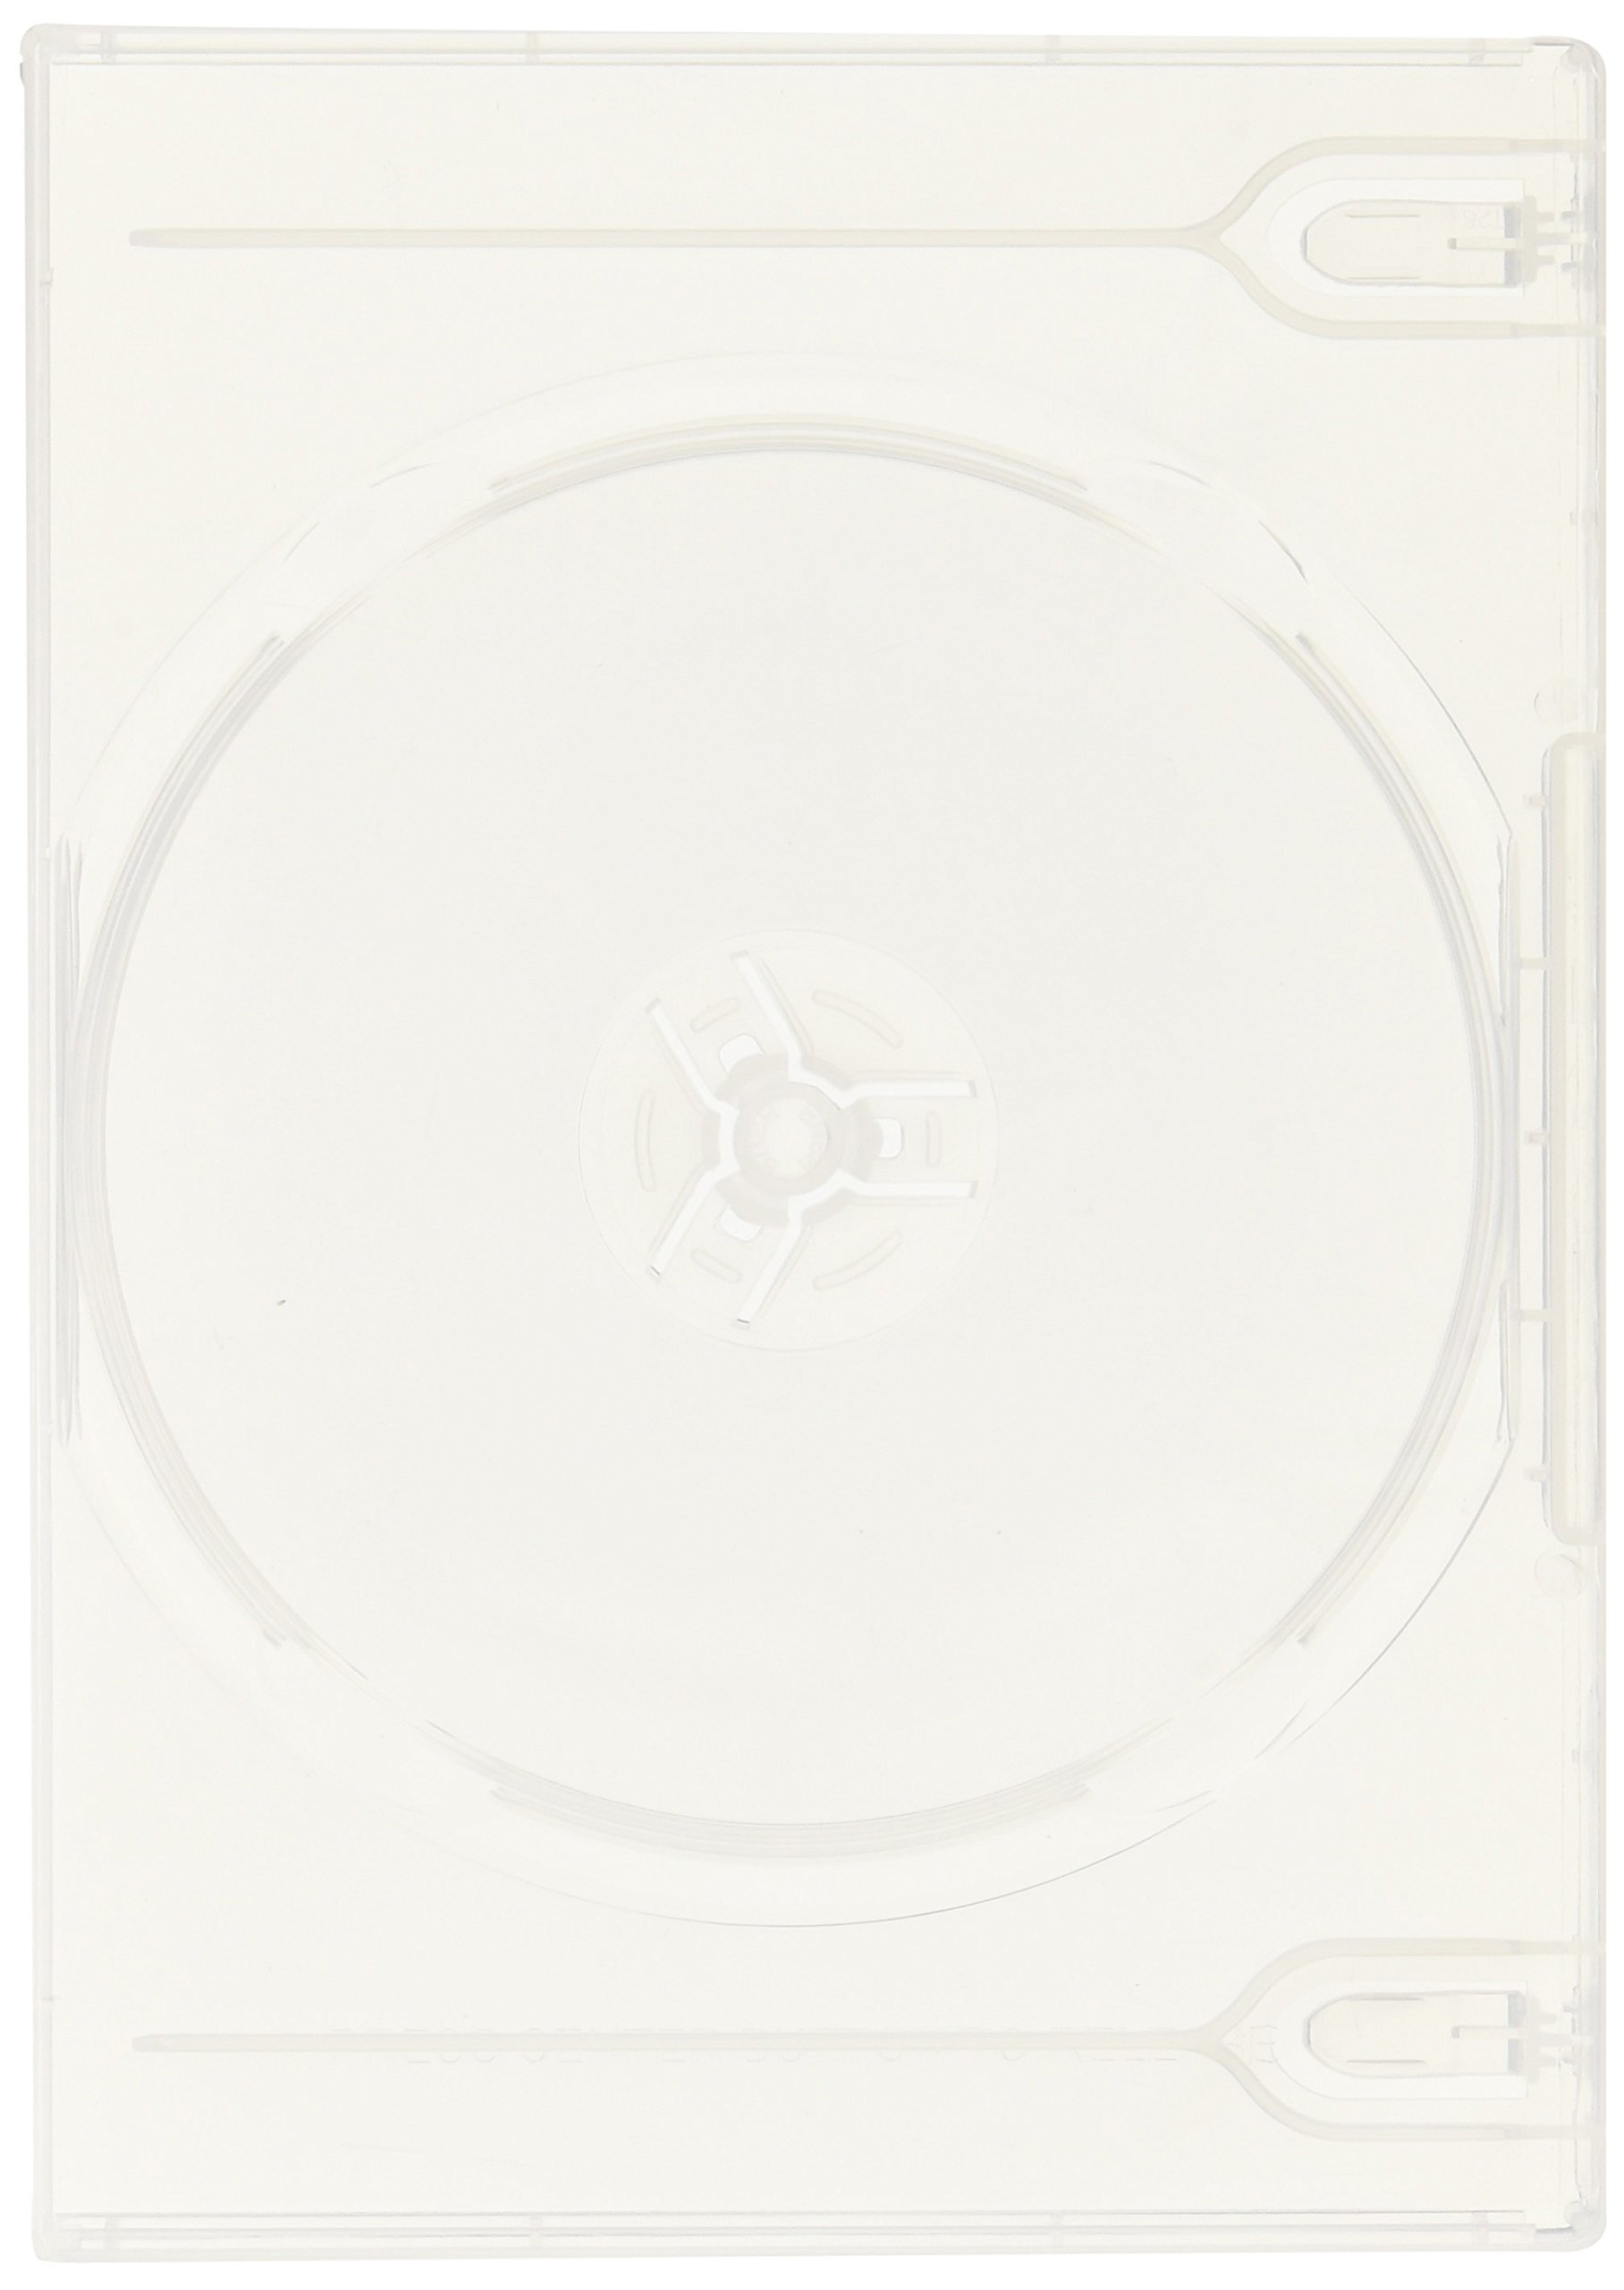 エレコム トールケース DVD BD 対応 標準サイズ 2枚収納 10個セット クリア CCD-DVD06CR